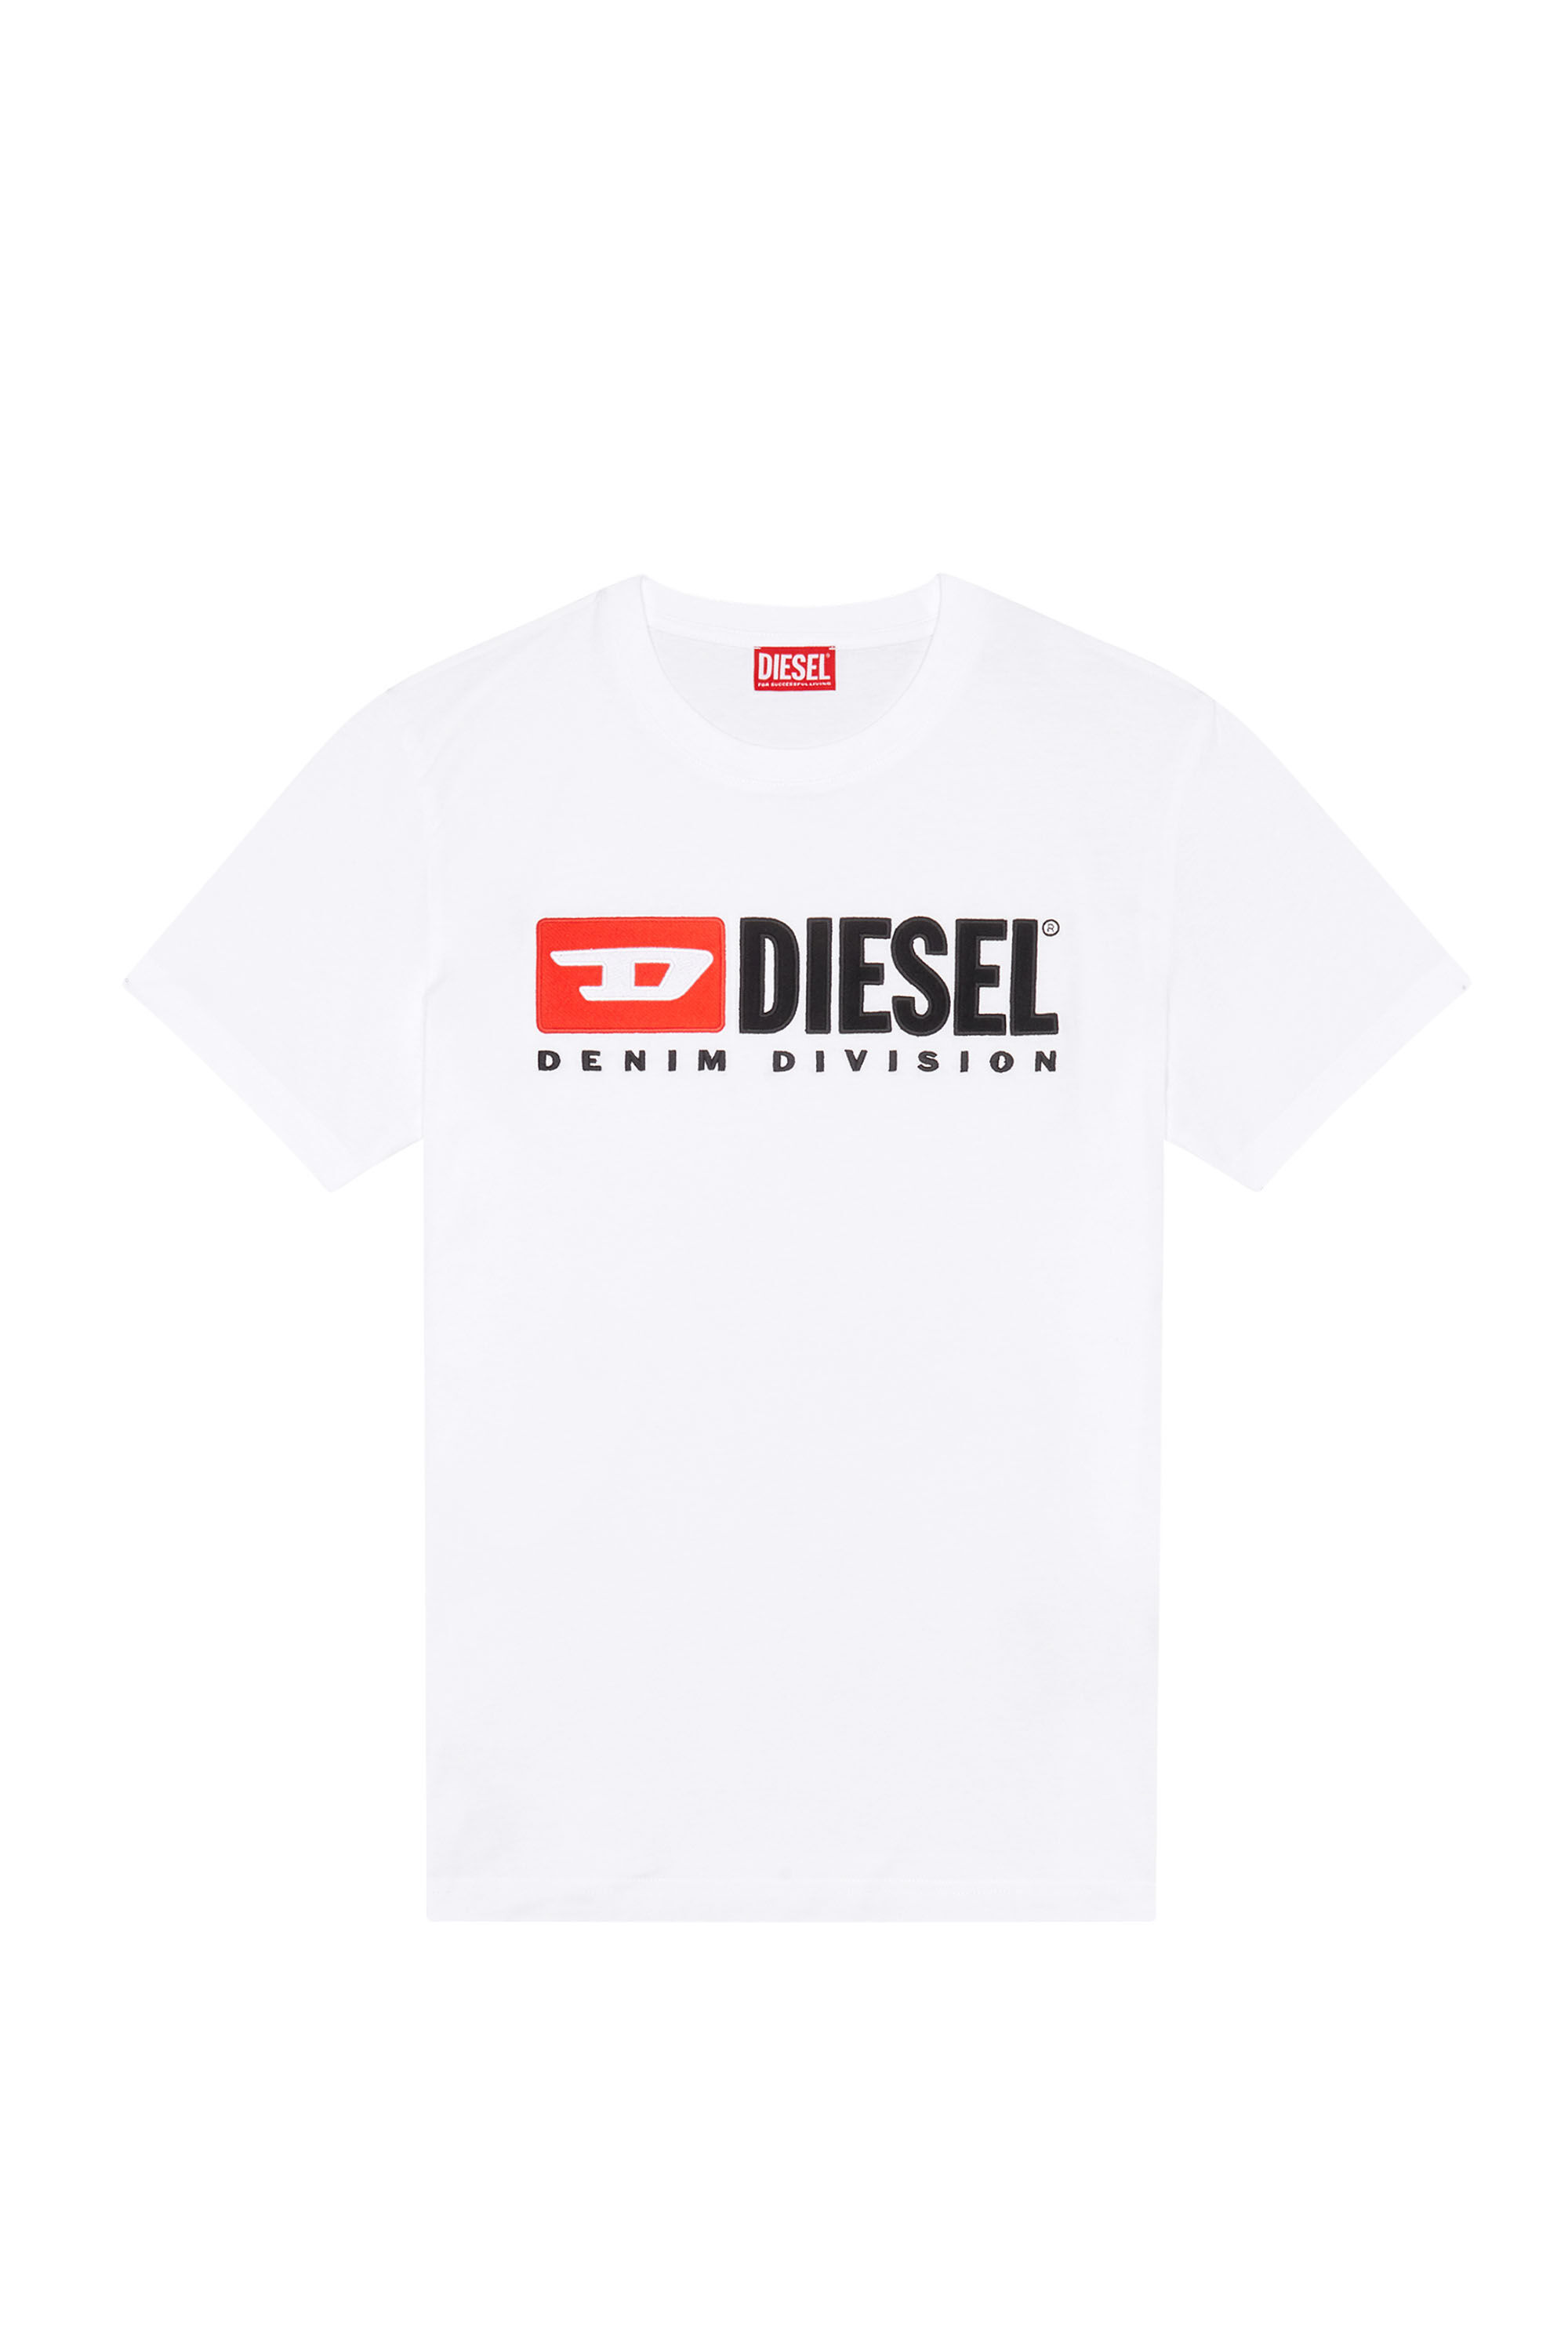 ディーゼル ロゴTシャツ 2021SS DIESEL ホワイト デカロゴ